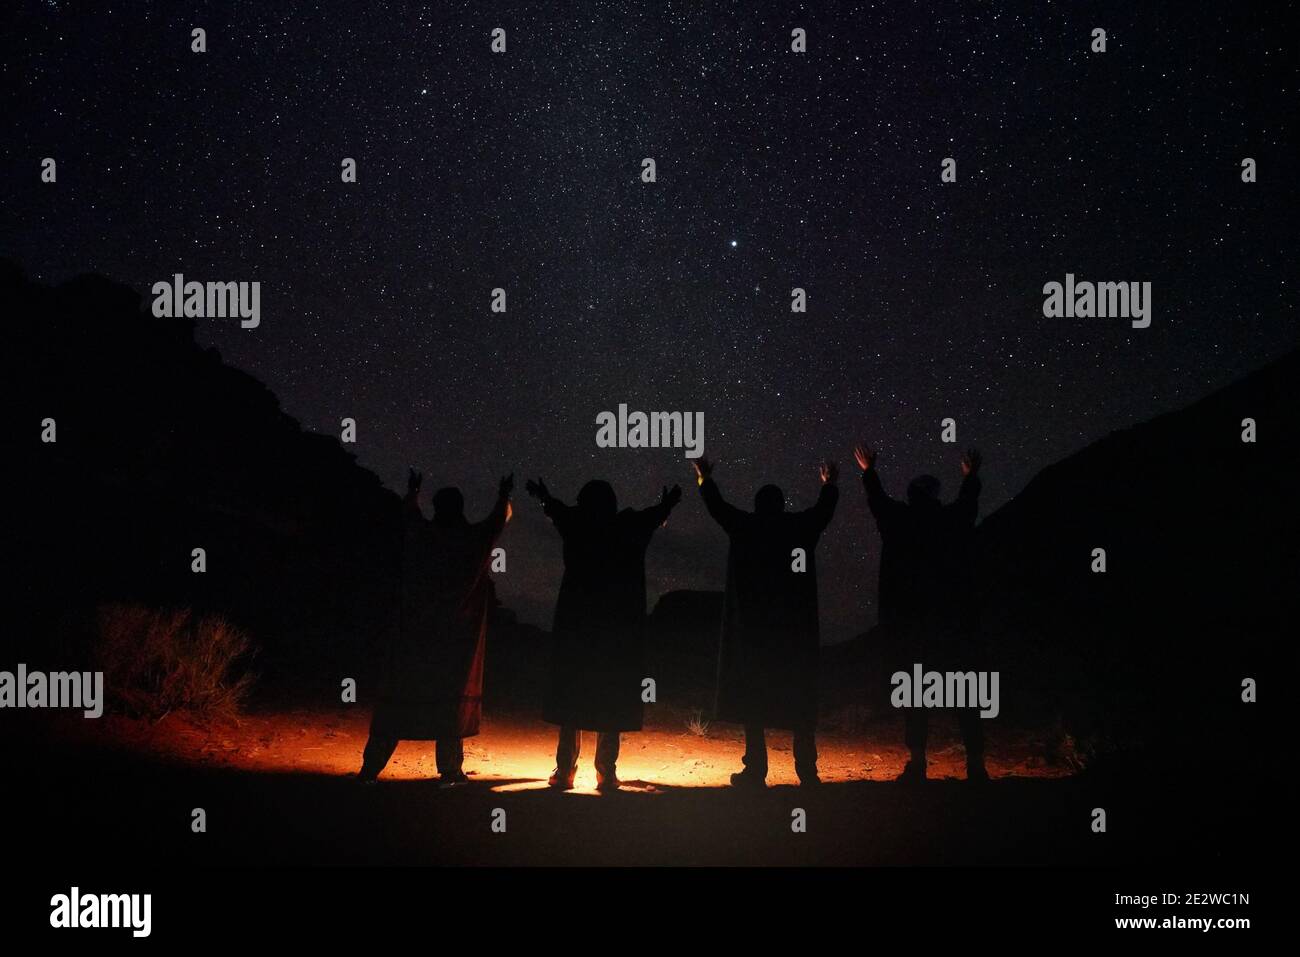 Quatre personnes portant de longs manteaux chauds debout dans le désert de nuit, mains soulevées au ciel avec des étoiles, lumière sur le sol, vue de derrière seulement silhouettes Banque D'Images